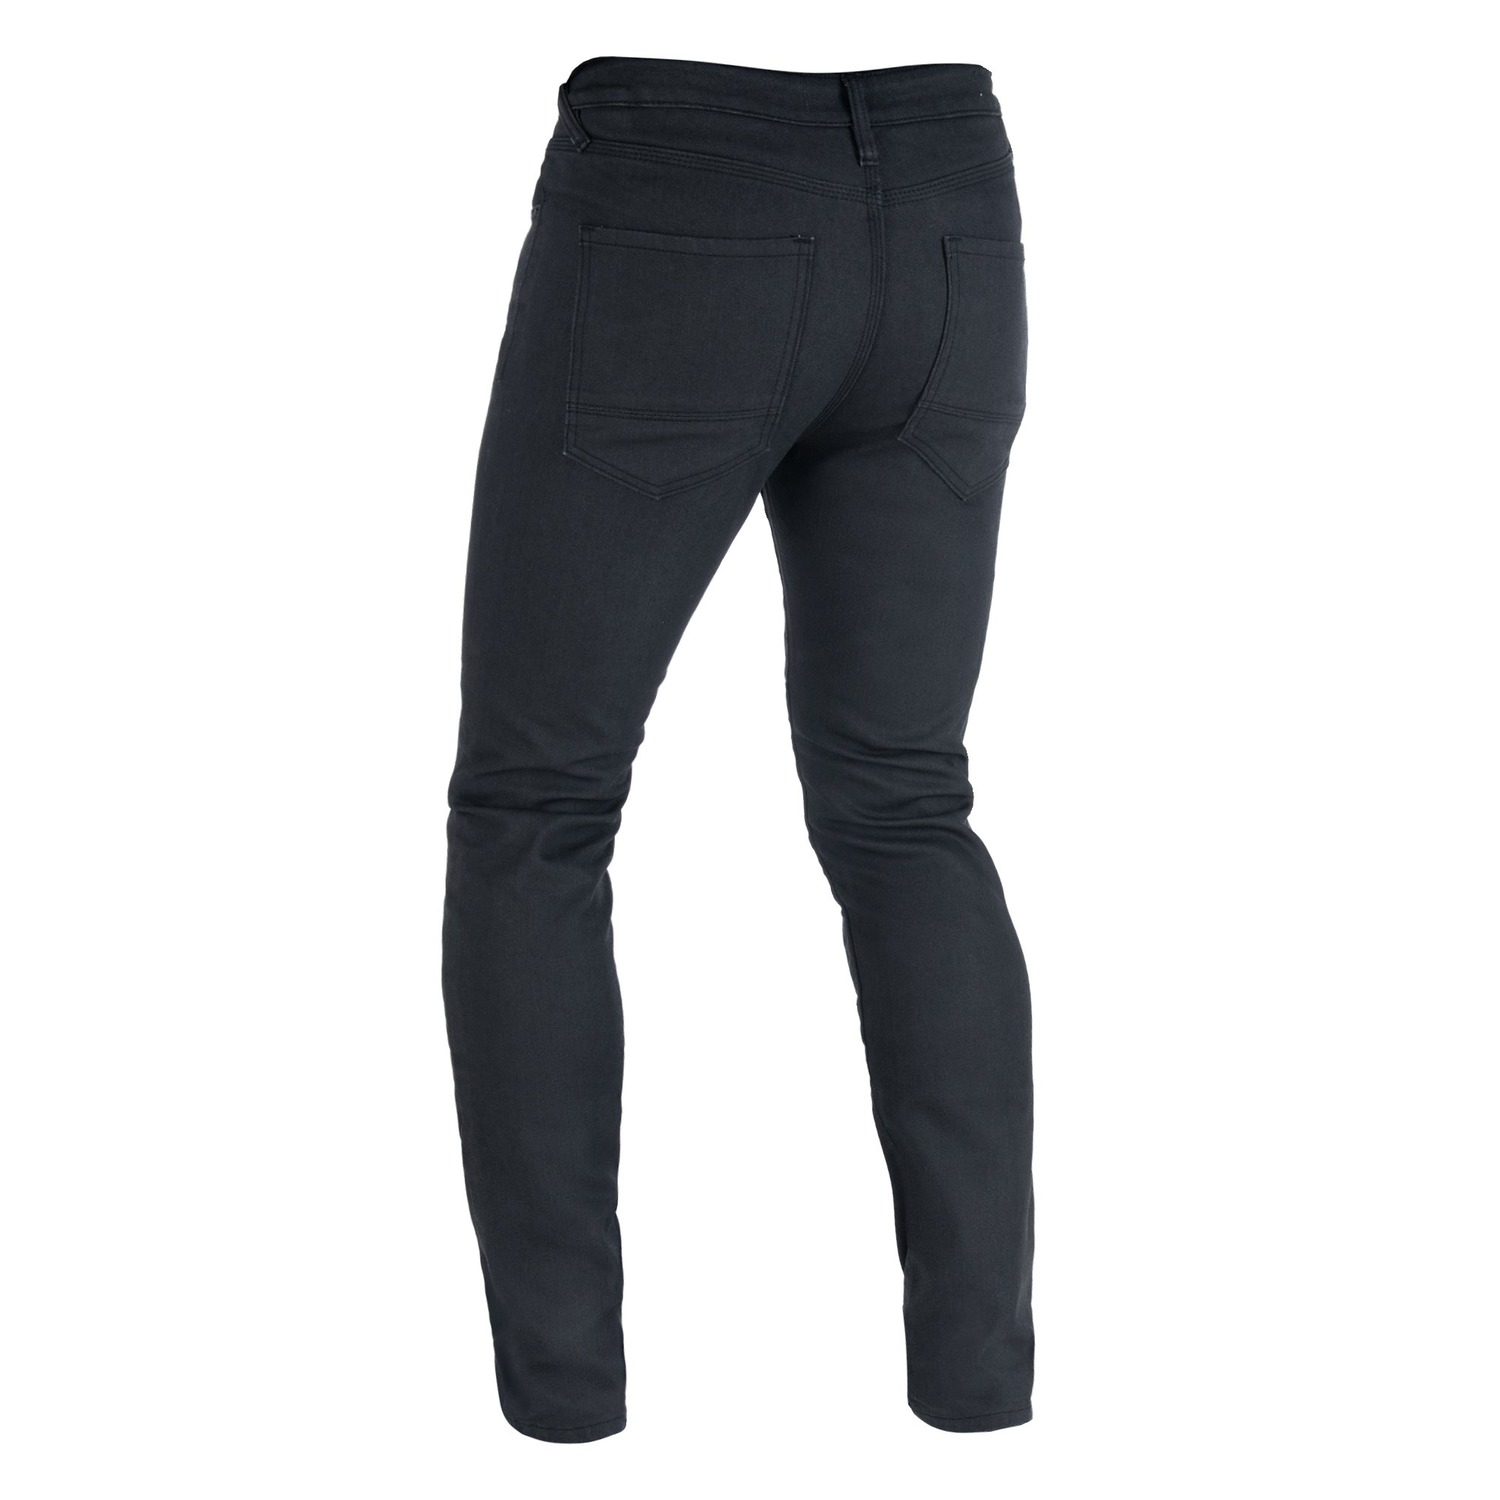 Obrázek produktu kalhoty Original Approved Jeans AA Slim fit, OXFORD, pánské (černá)